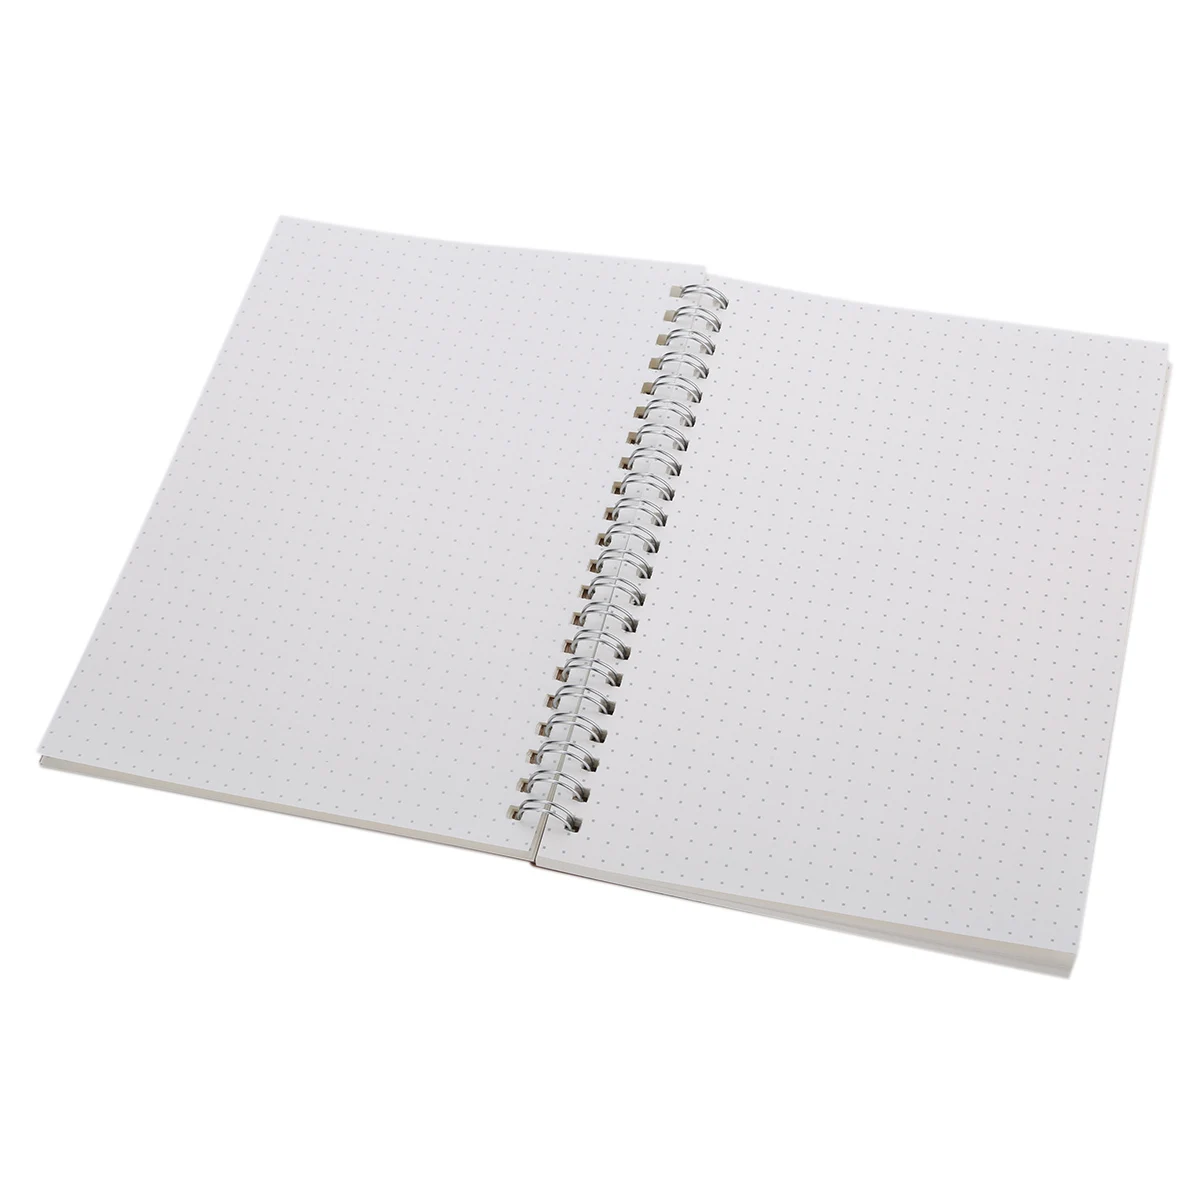 Простой блокнот формата А5 в твердом переплете, картонная обложка, 90 страниц, спираль, белая бумага для заметок, 134*190 мм